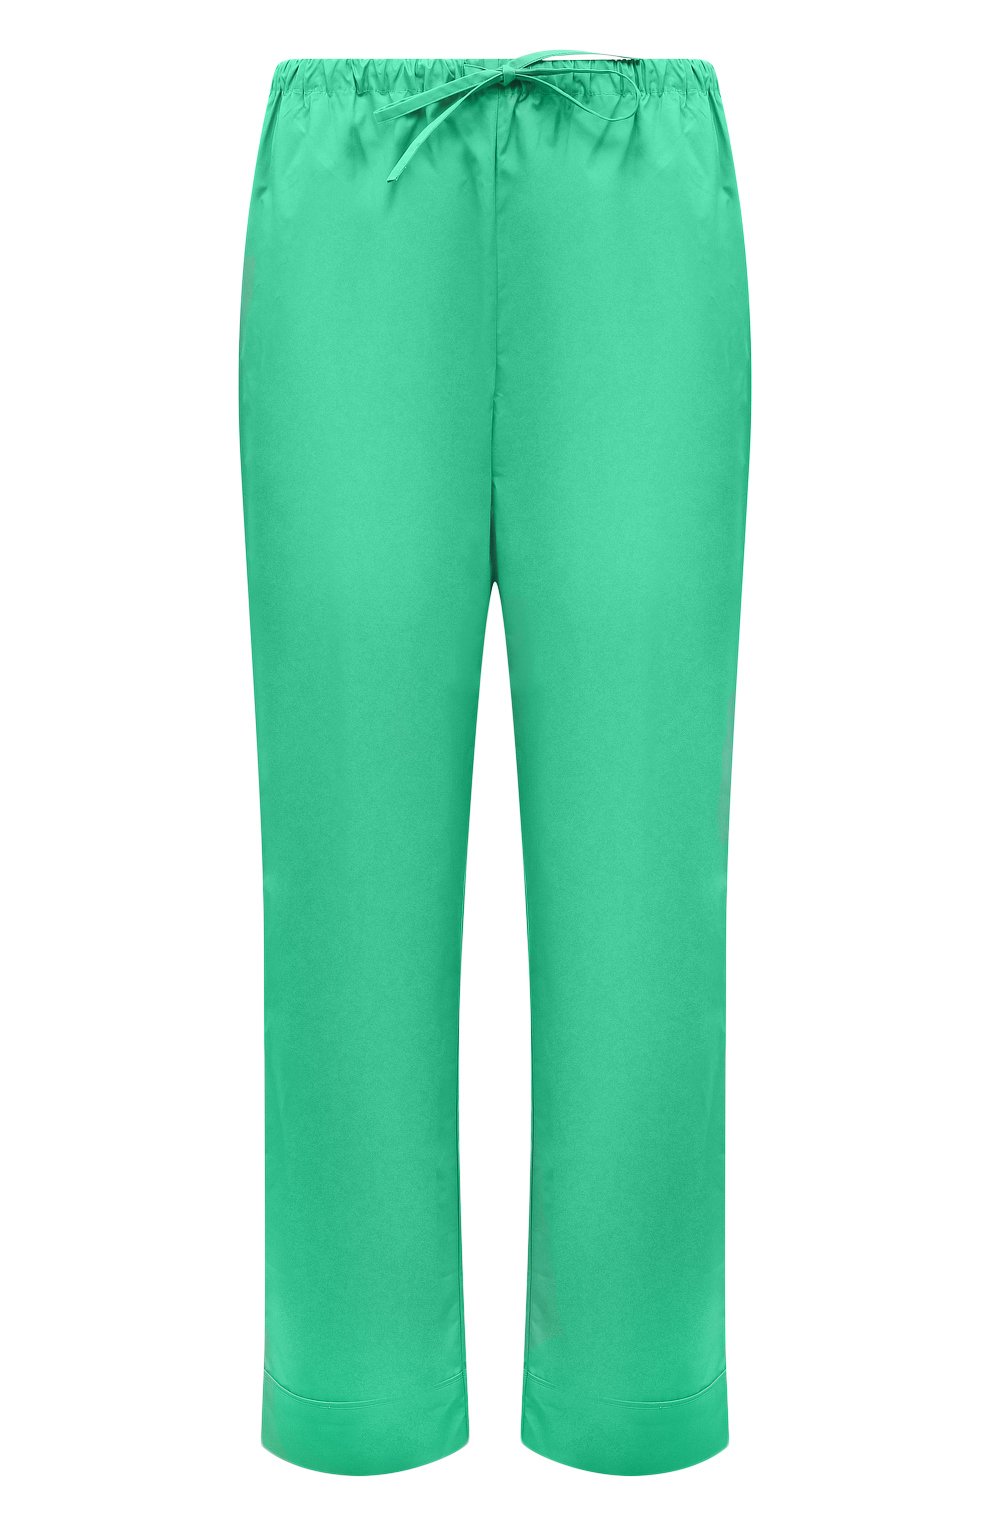 Женские хлопковые брюки LOVE STORIES зеленого цвета, арт. L2313109700 | Фото 1 (Женское Кросс-КТ: Брюки-белье; Материал внешний: Хлопок)